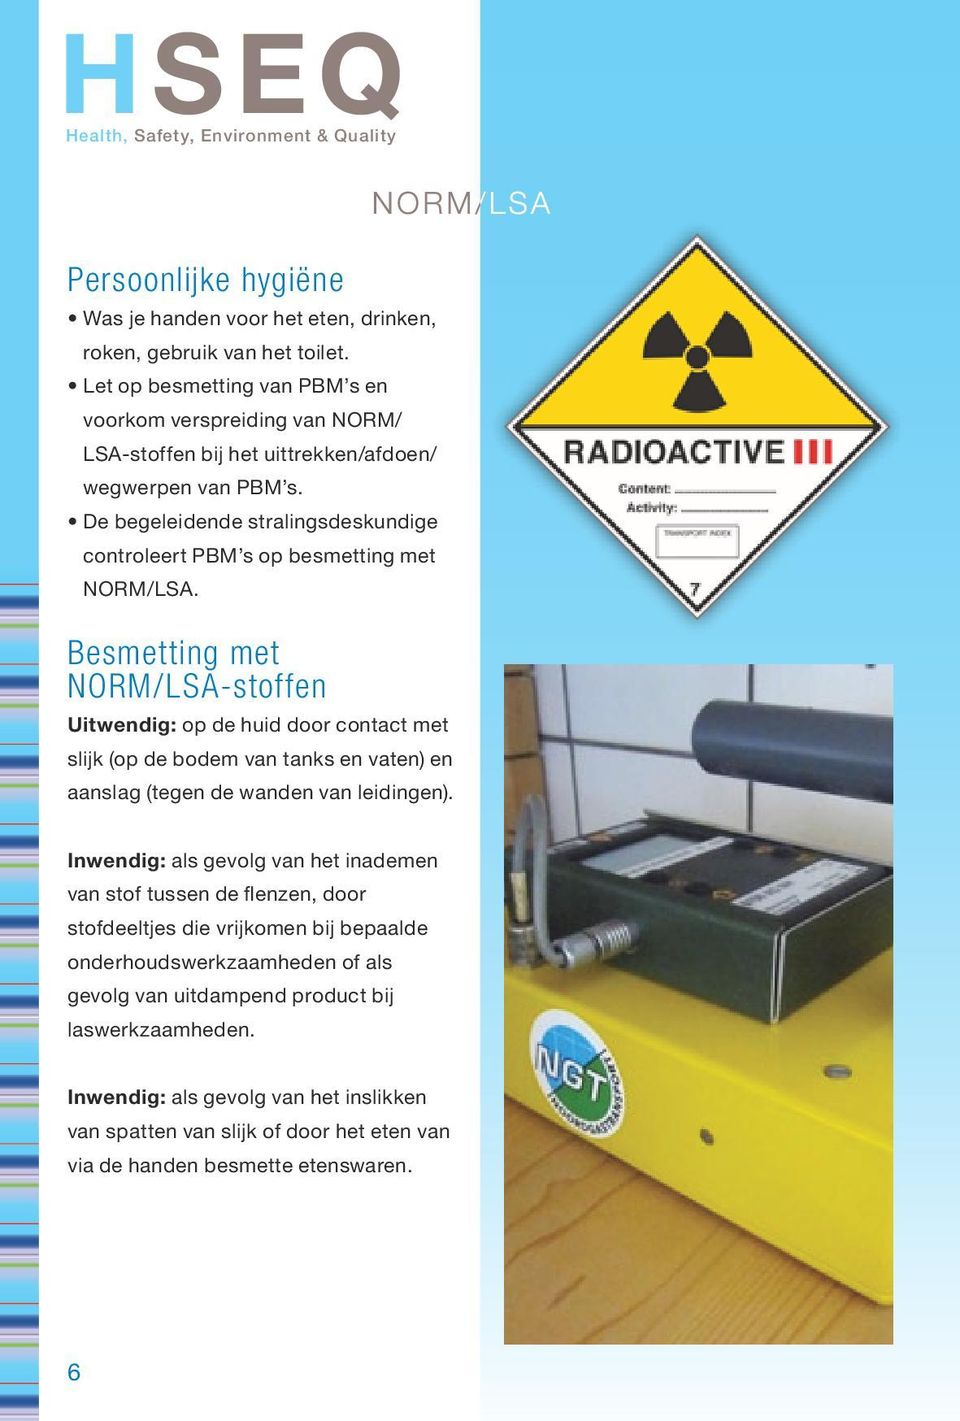 De begeleidende stralingsdeskundige controleert PBM s op besmetting met NORM/LSA.